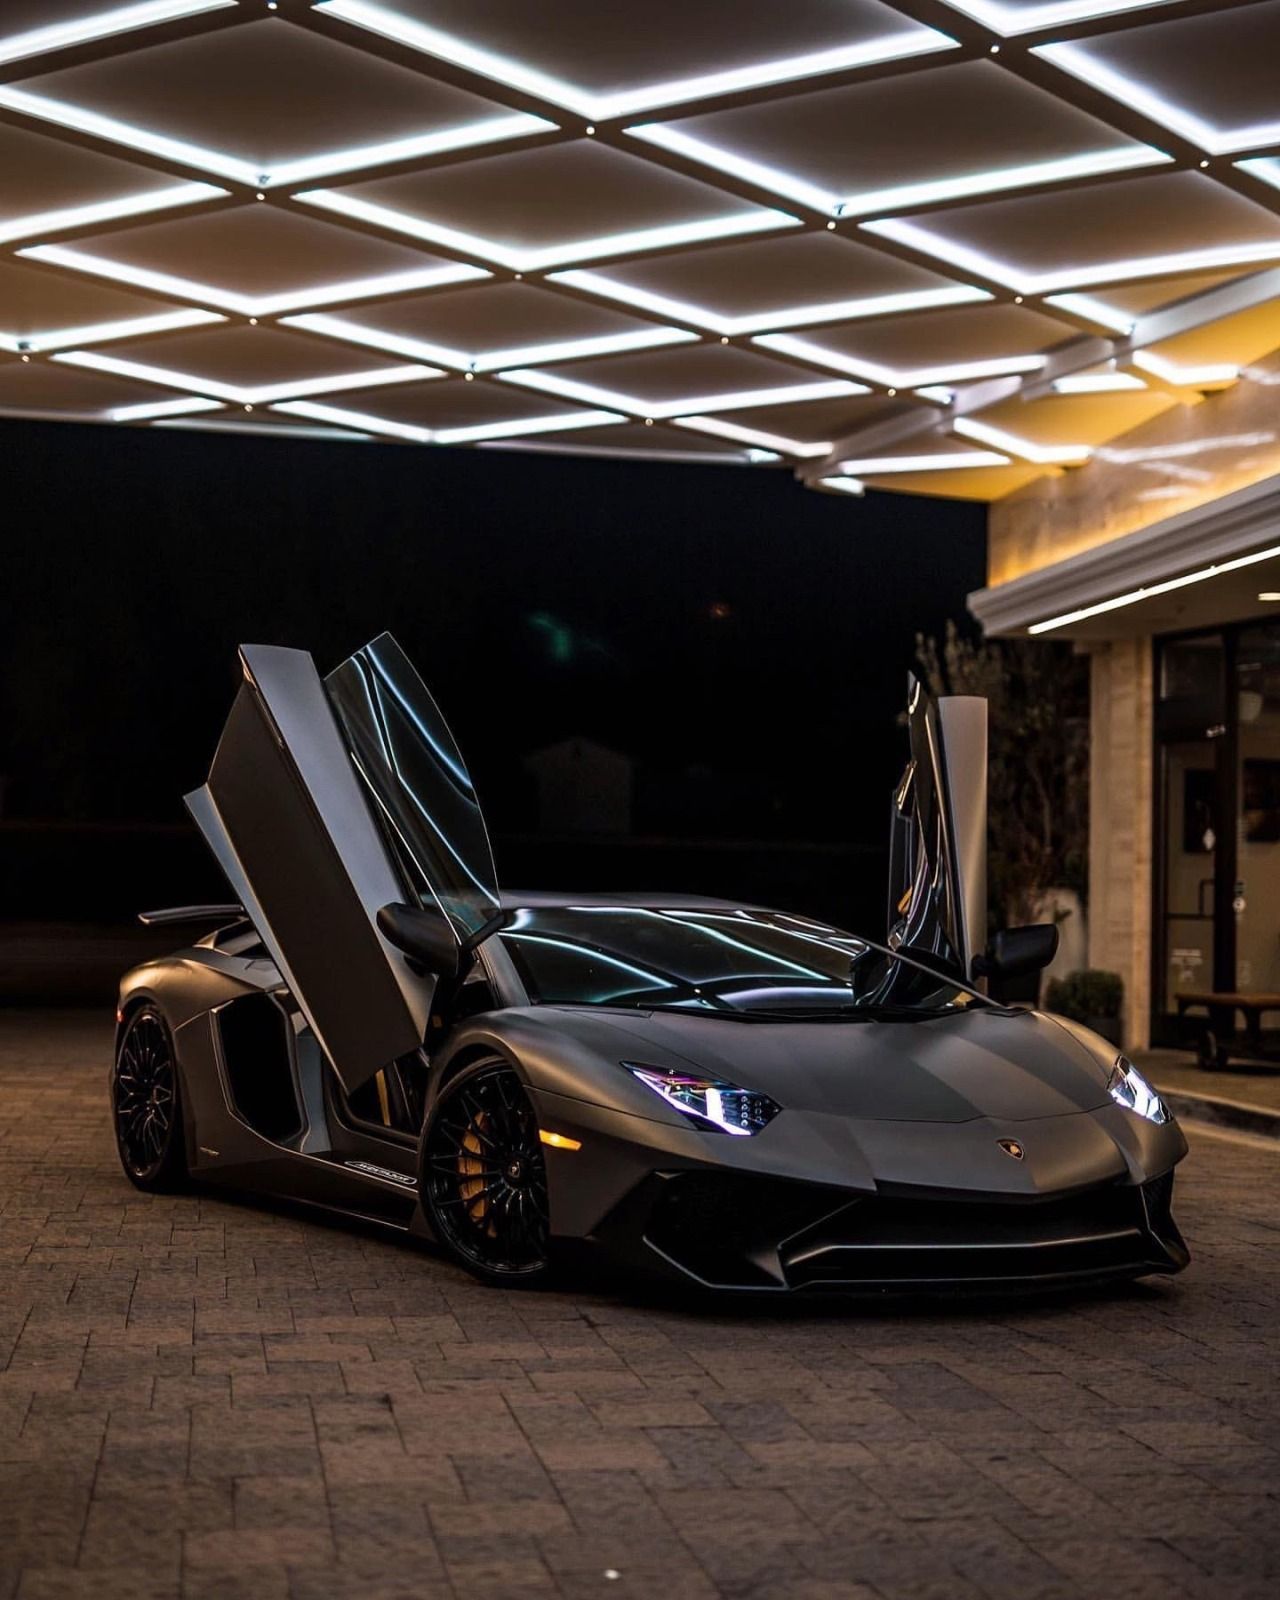 Thương hiệu hàng đầu thế giới – Lamborghini